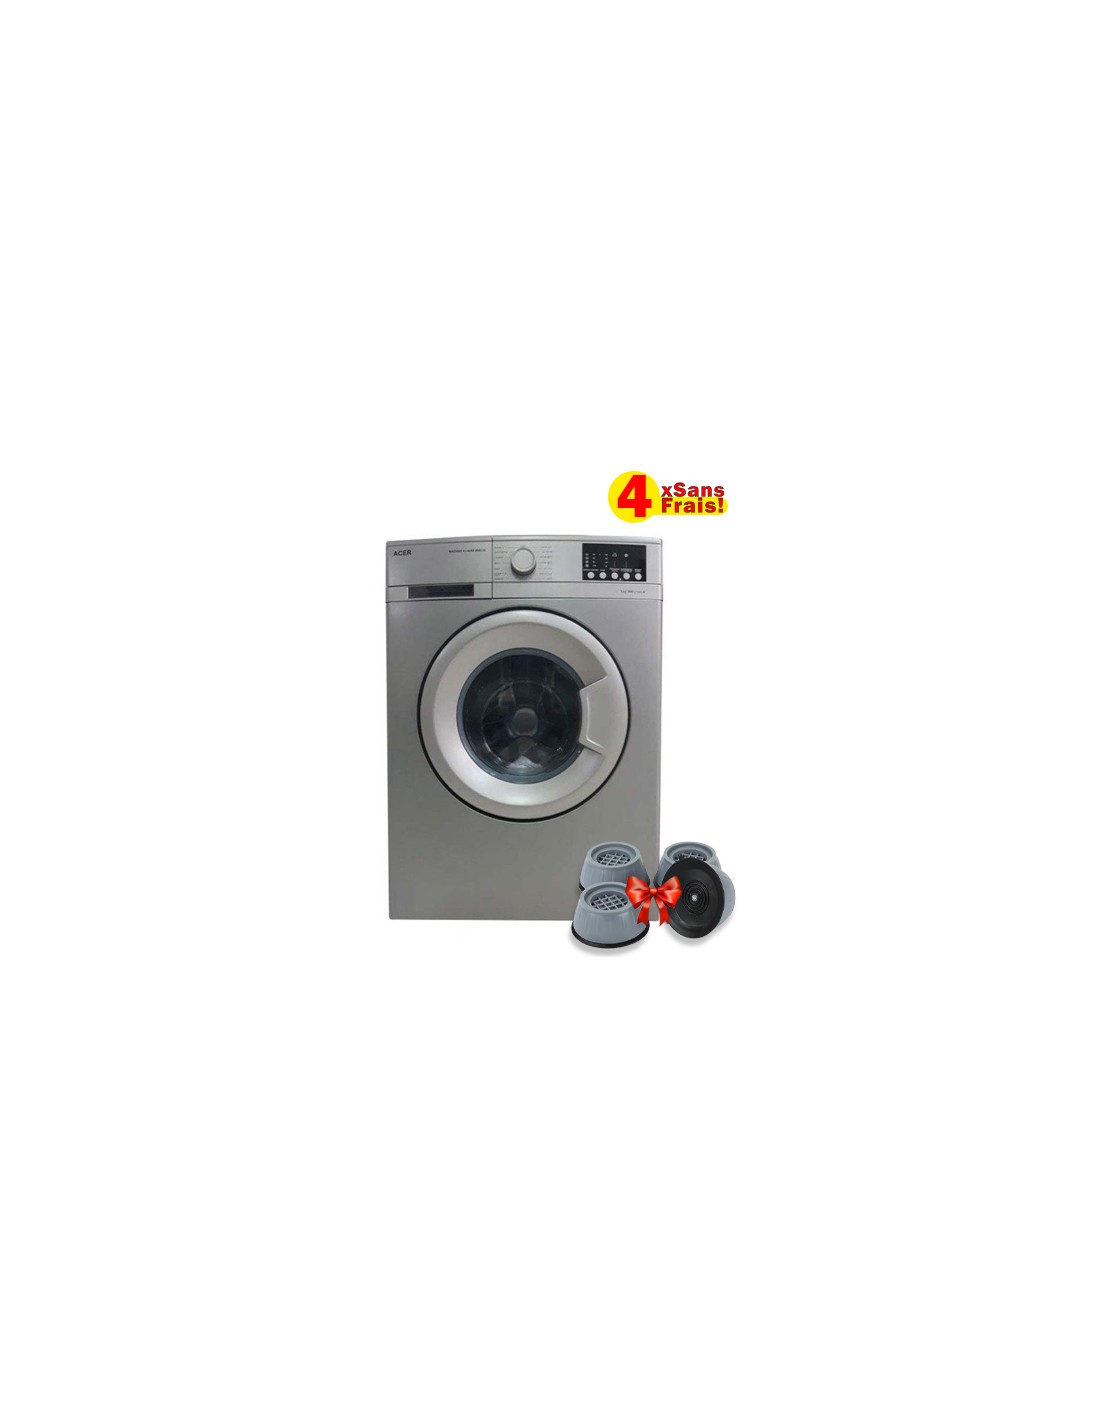 Machine à laver ACER 8KG frontale silver (1051SE) Classe énergétique : A+++  Capacité de lavage: 8 kg Vitesse d'Essorage: 1000…